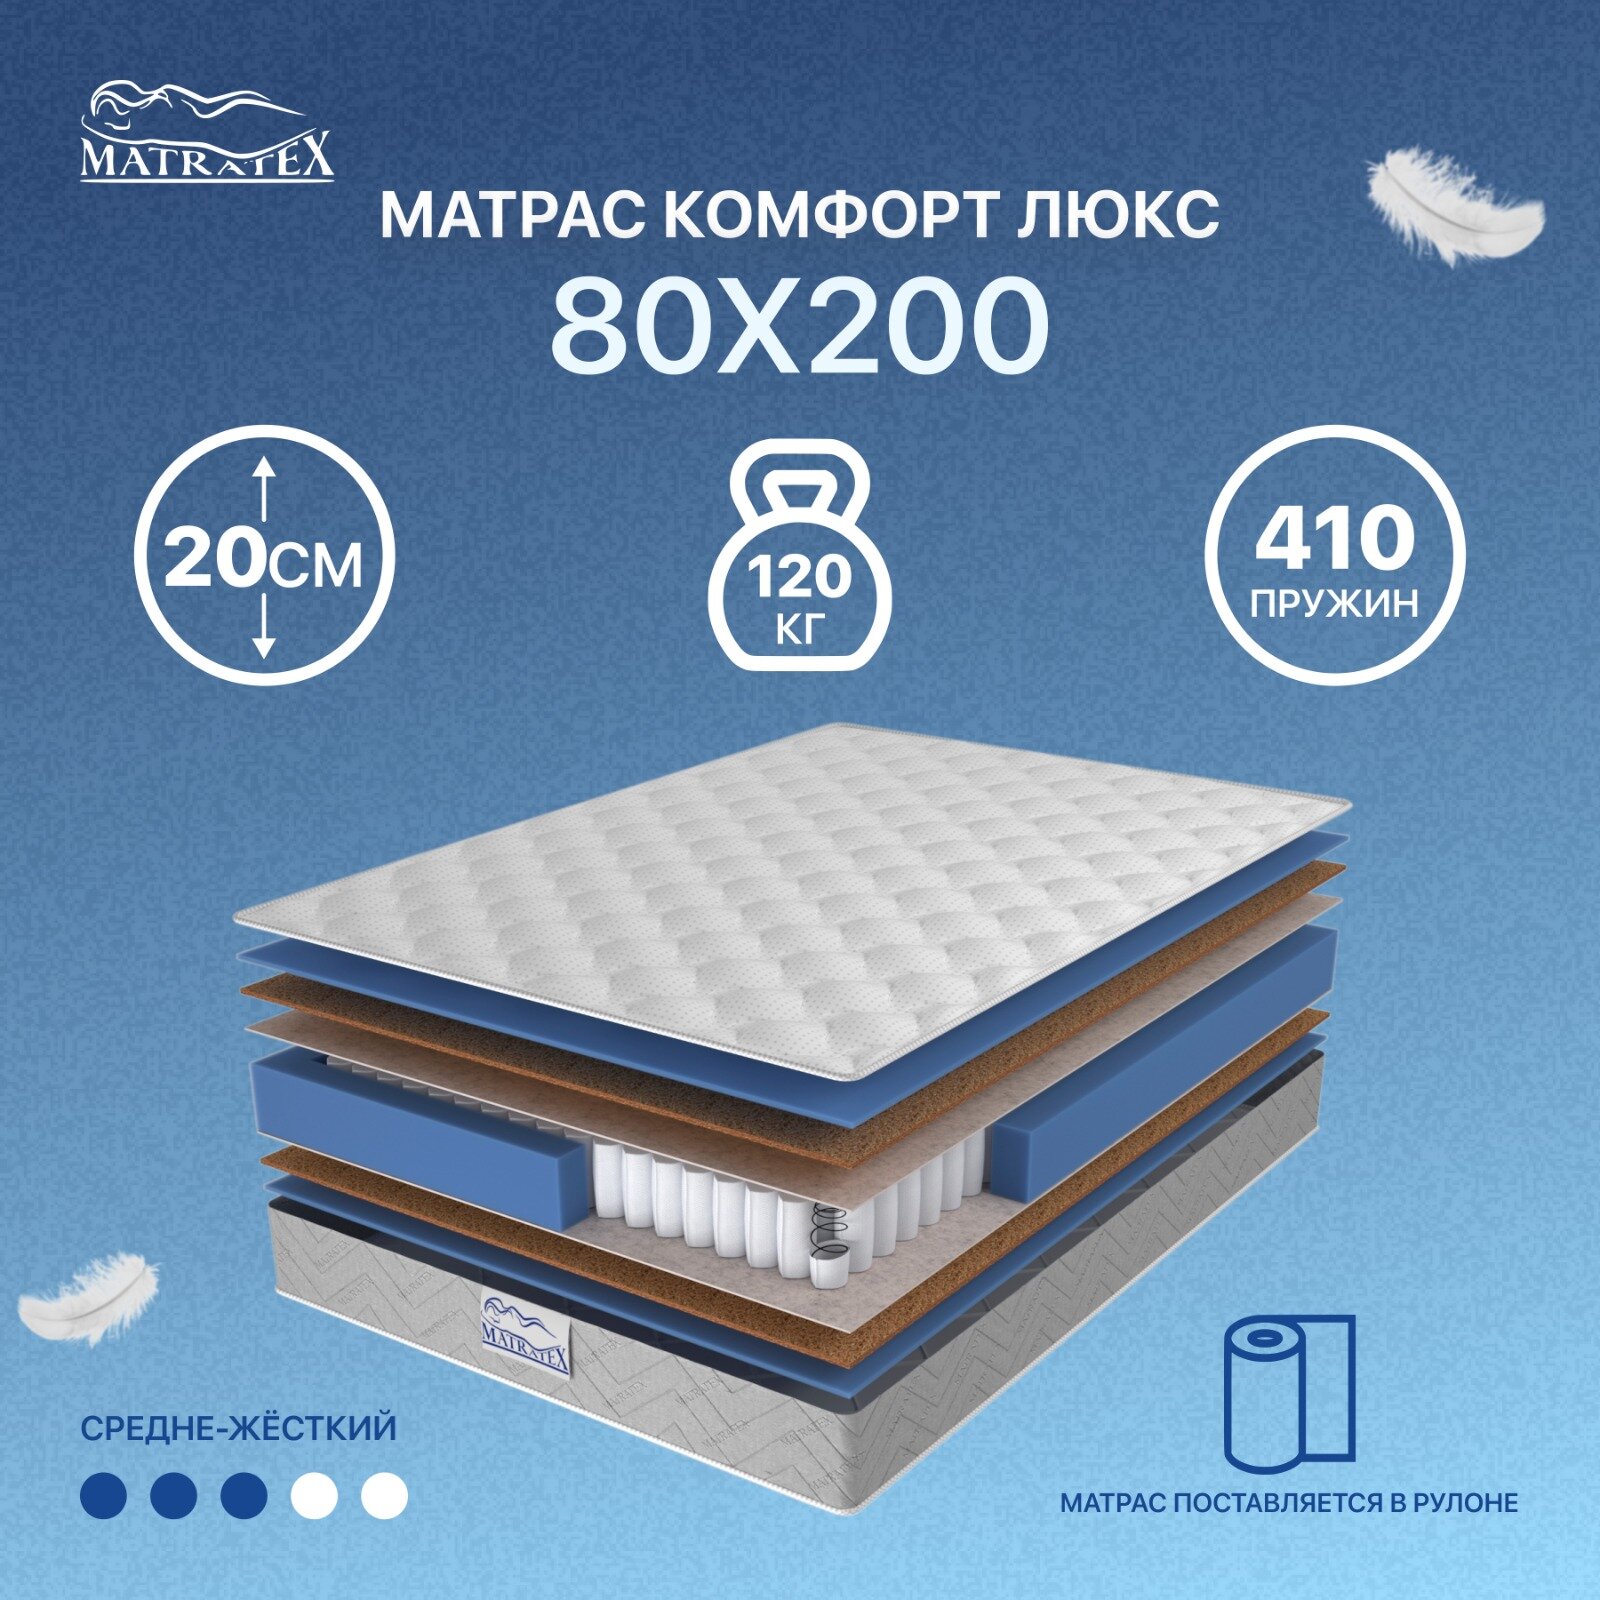 Матрас MATRATEX комфорт люкс 80х200